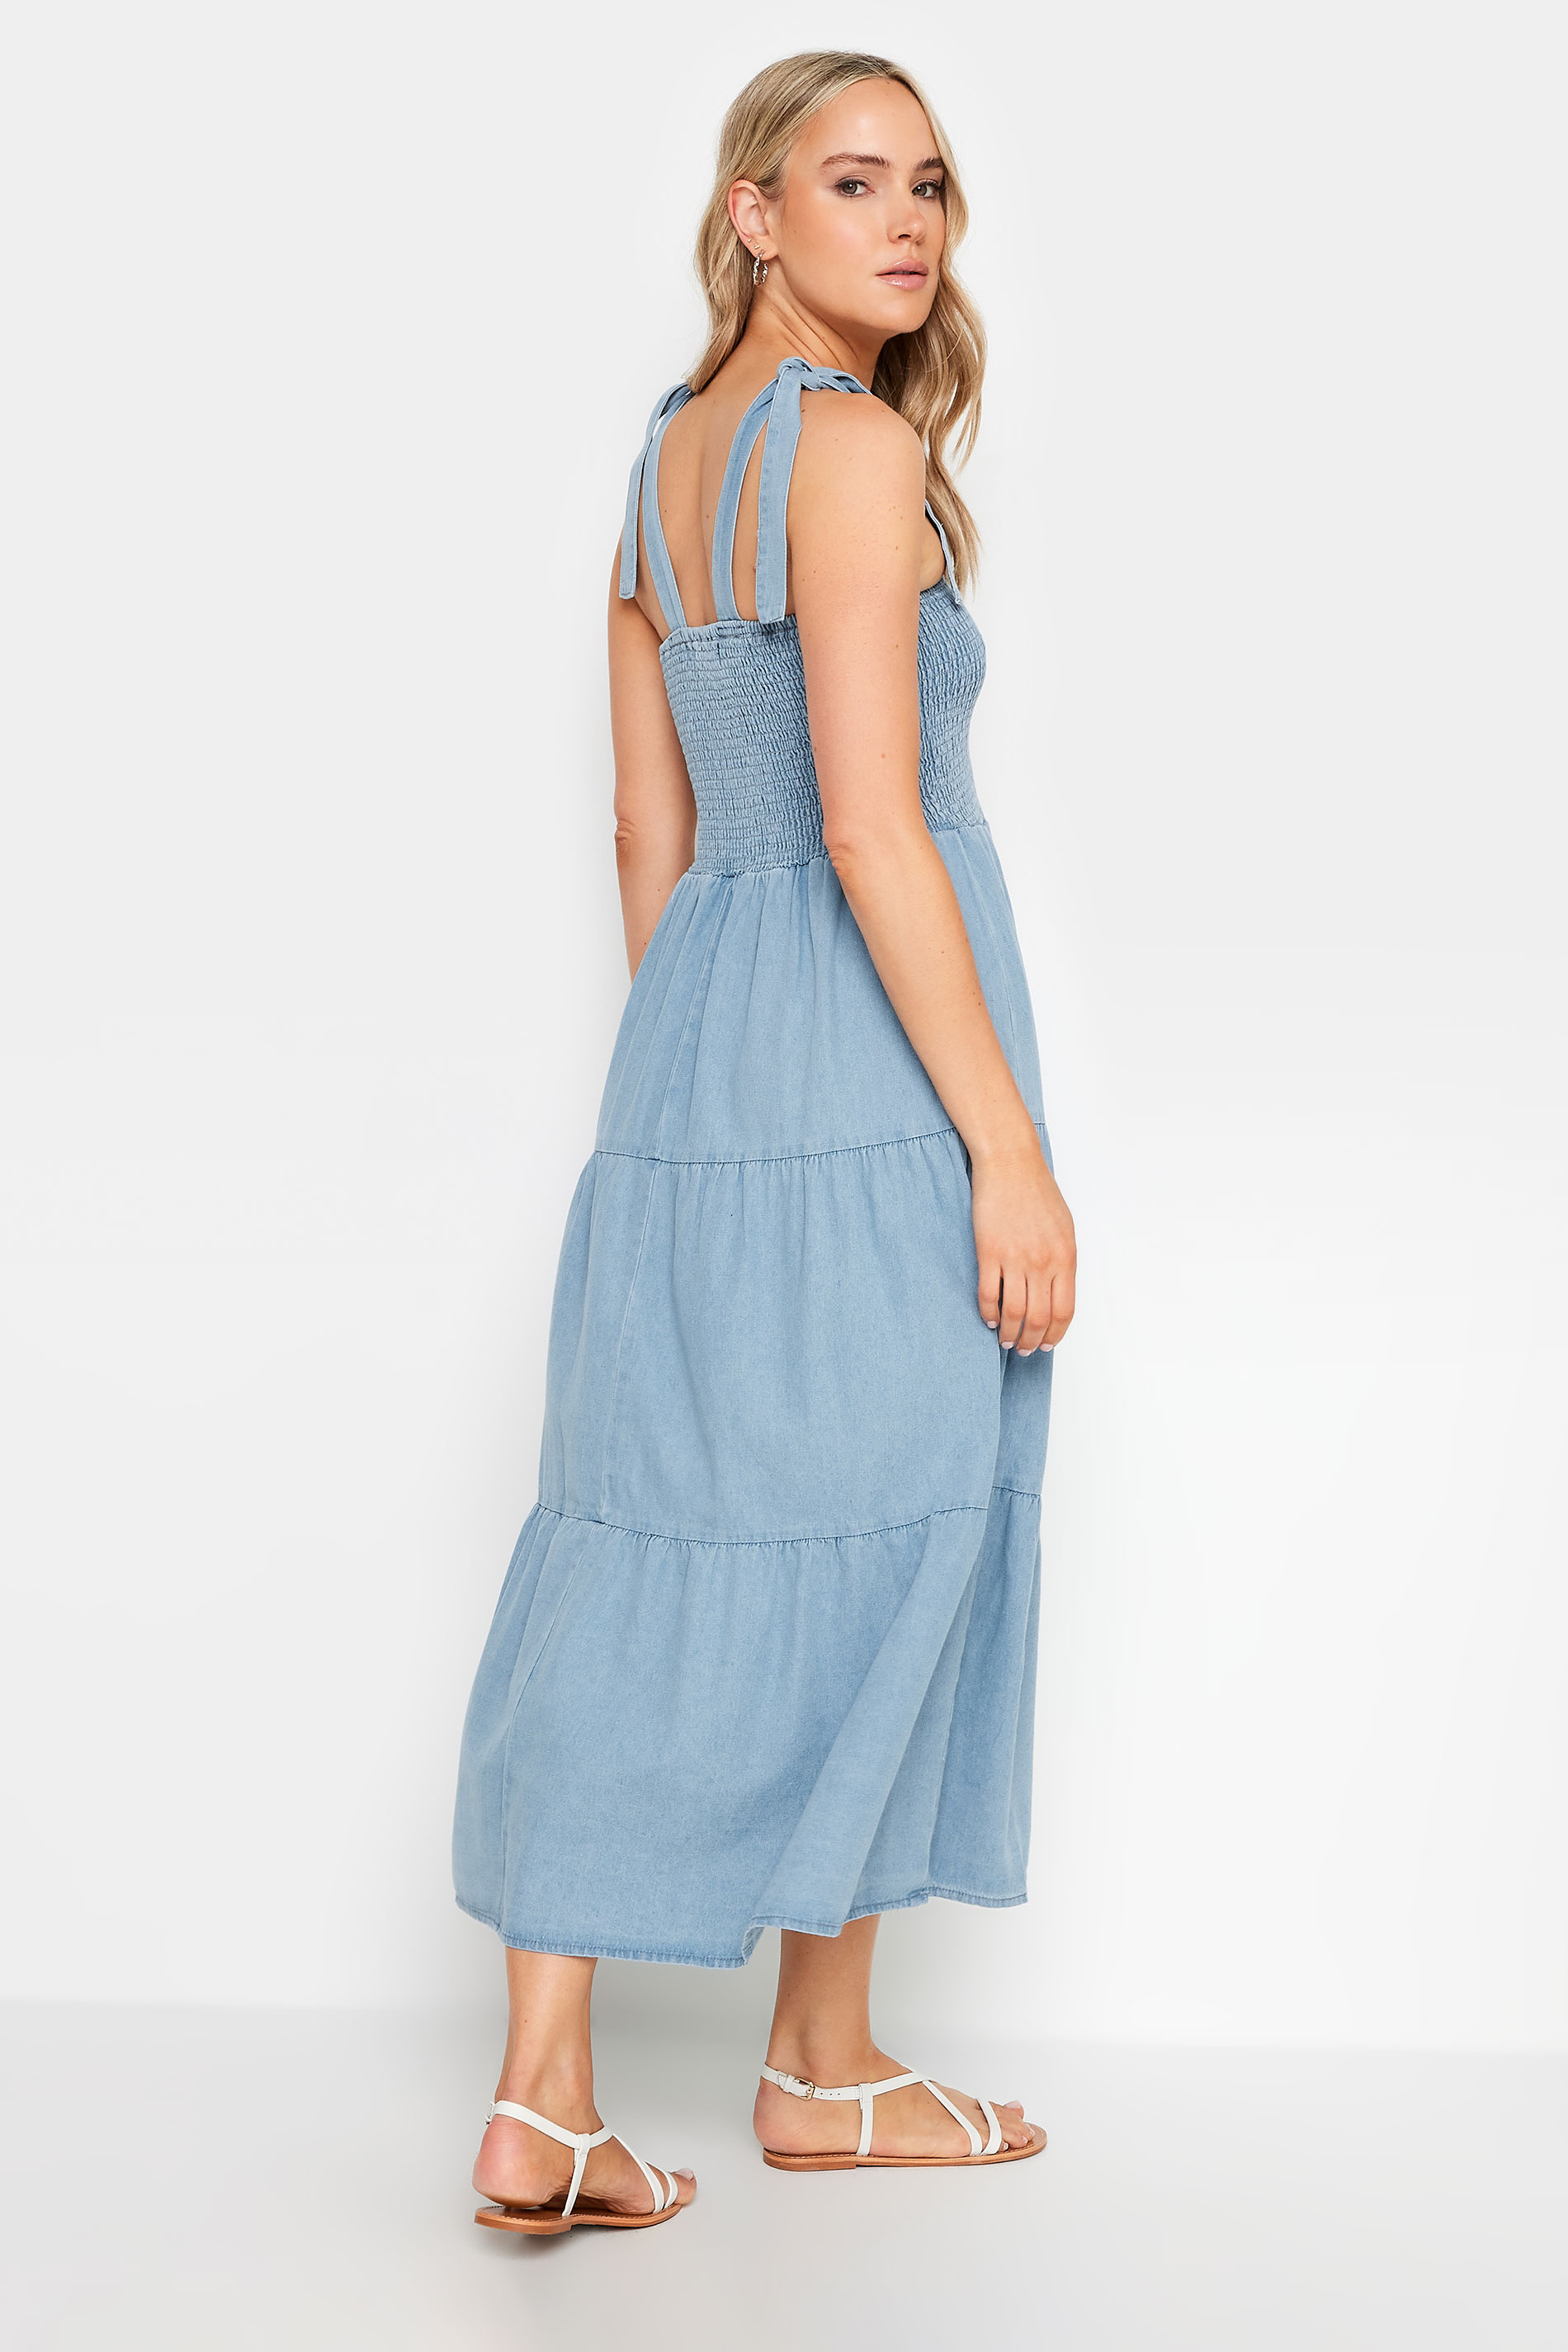 LTS Tall Women's Blue Denim Shirred Tiered Midi Dress | Long Tall Sally 3